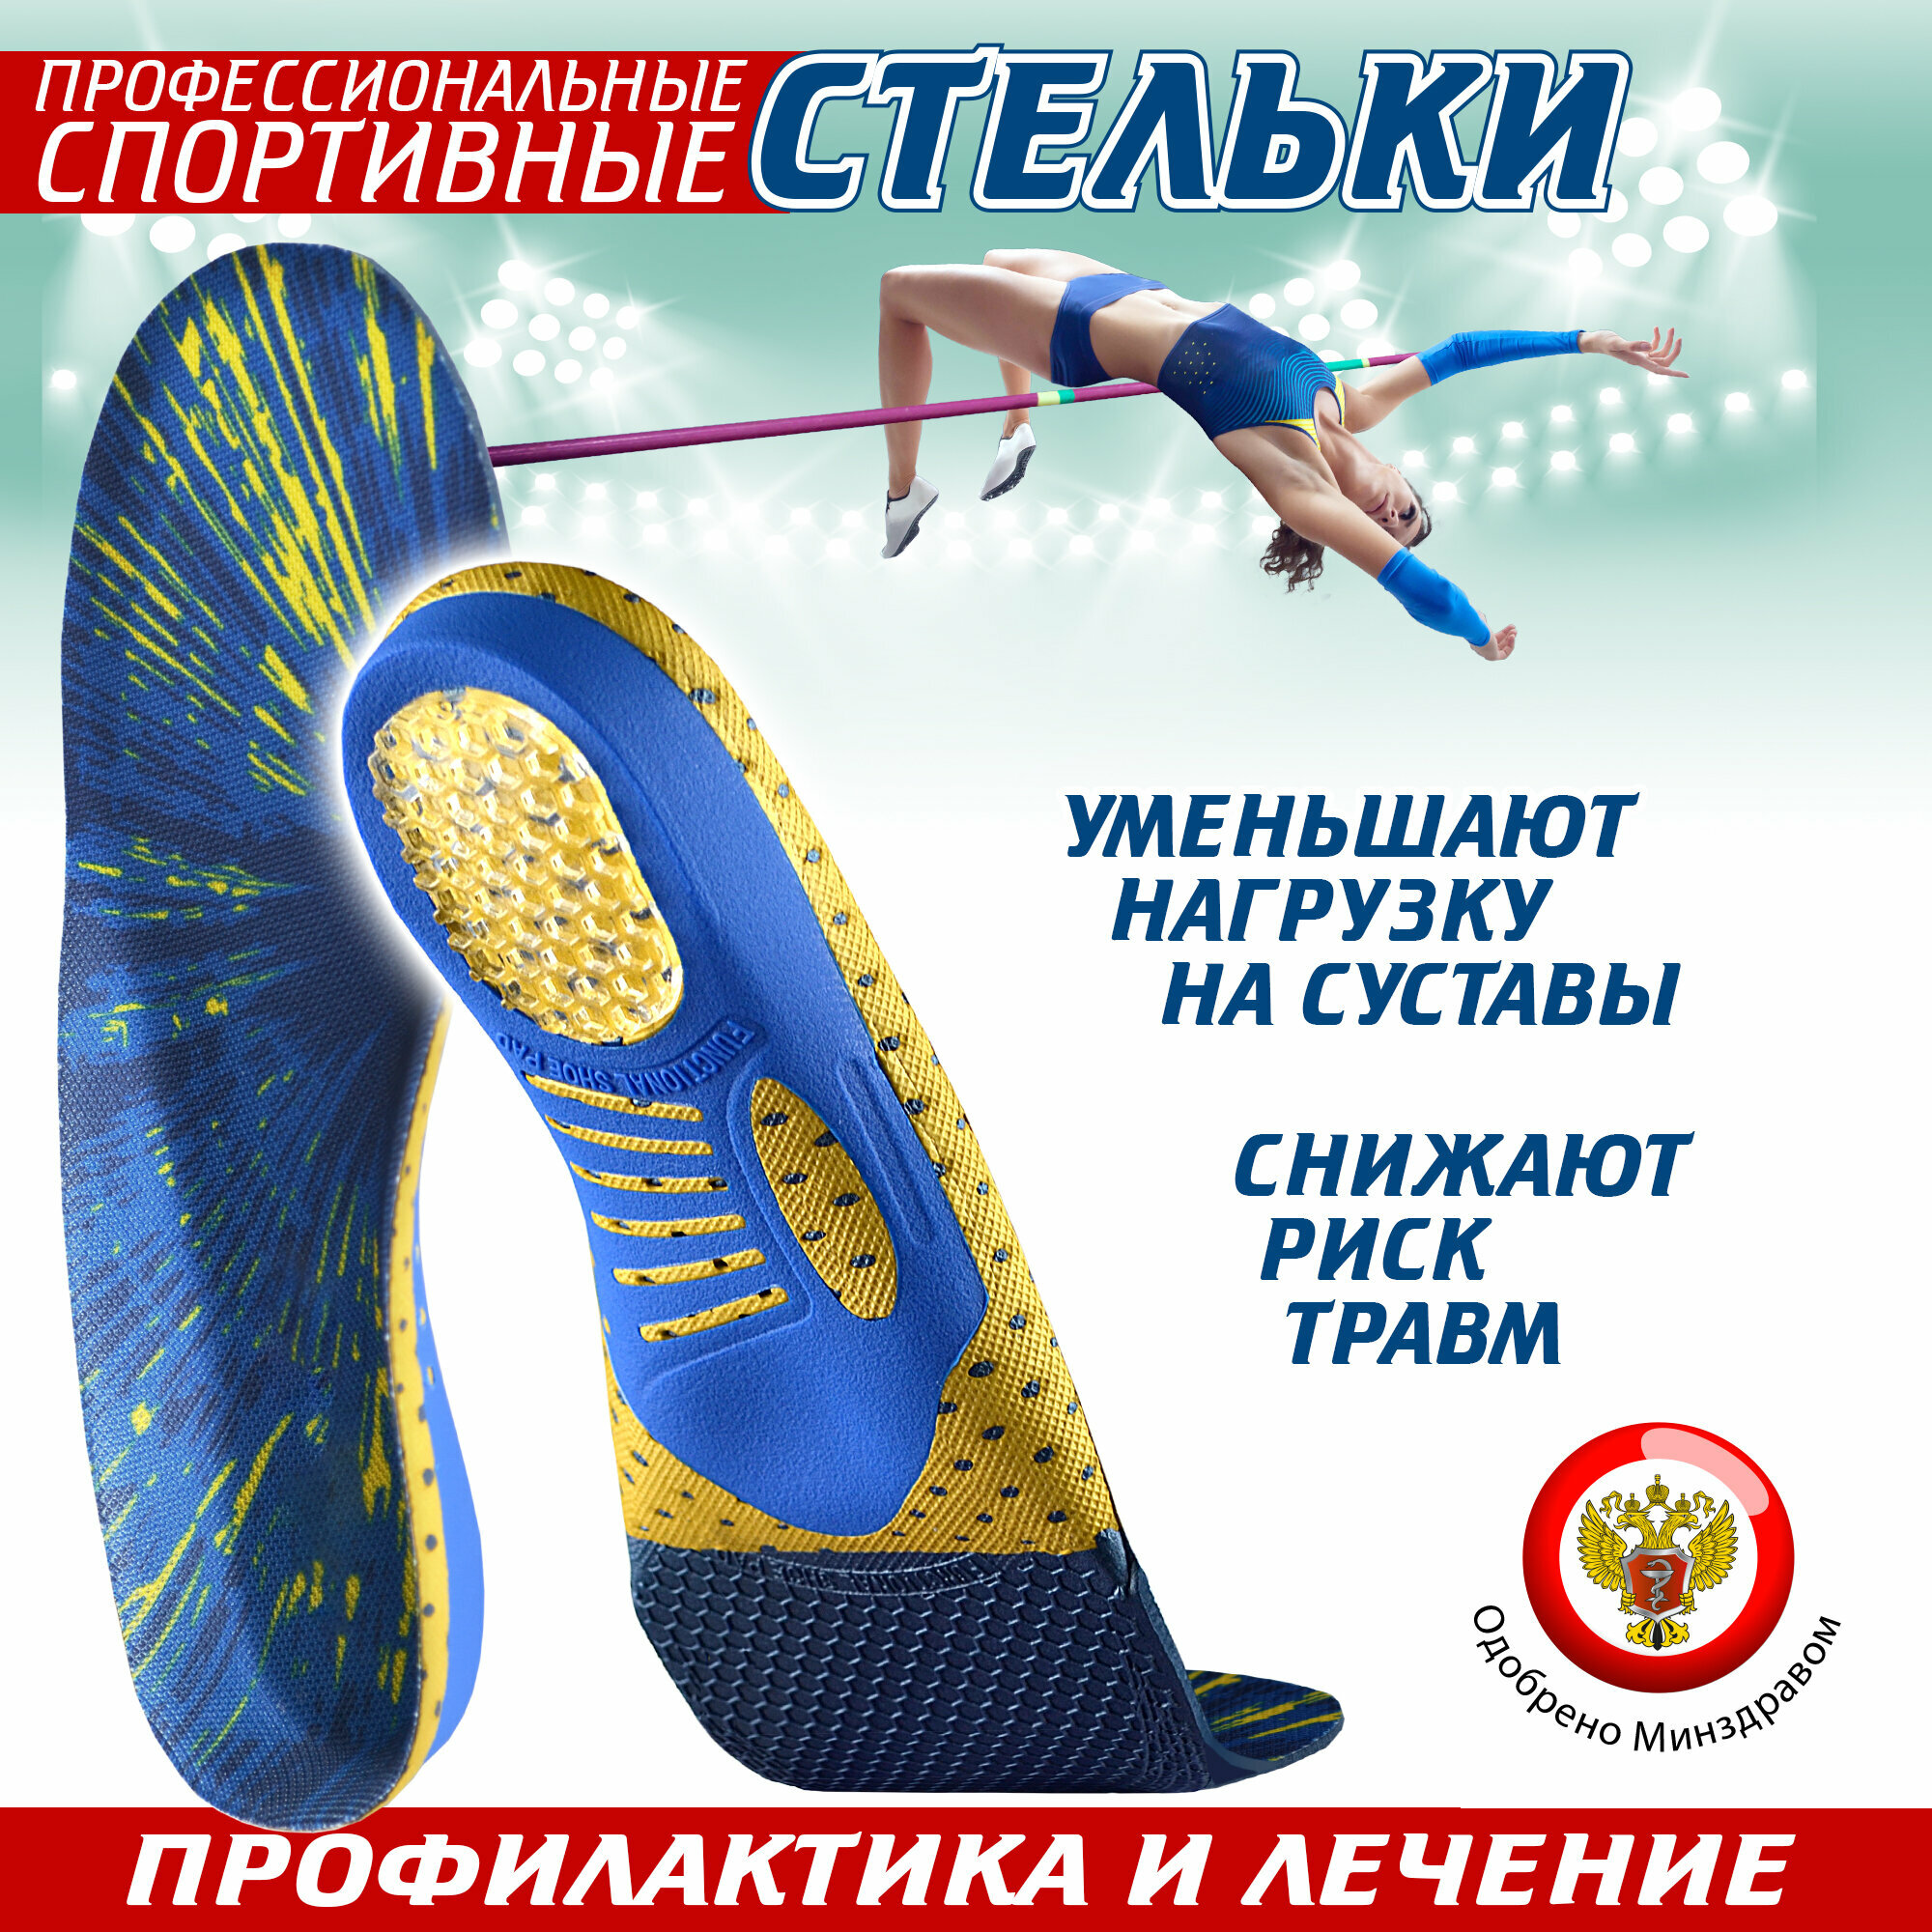 Ортопедические стельки спортивные Sport, для обуви, каркасные, 45